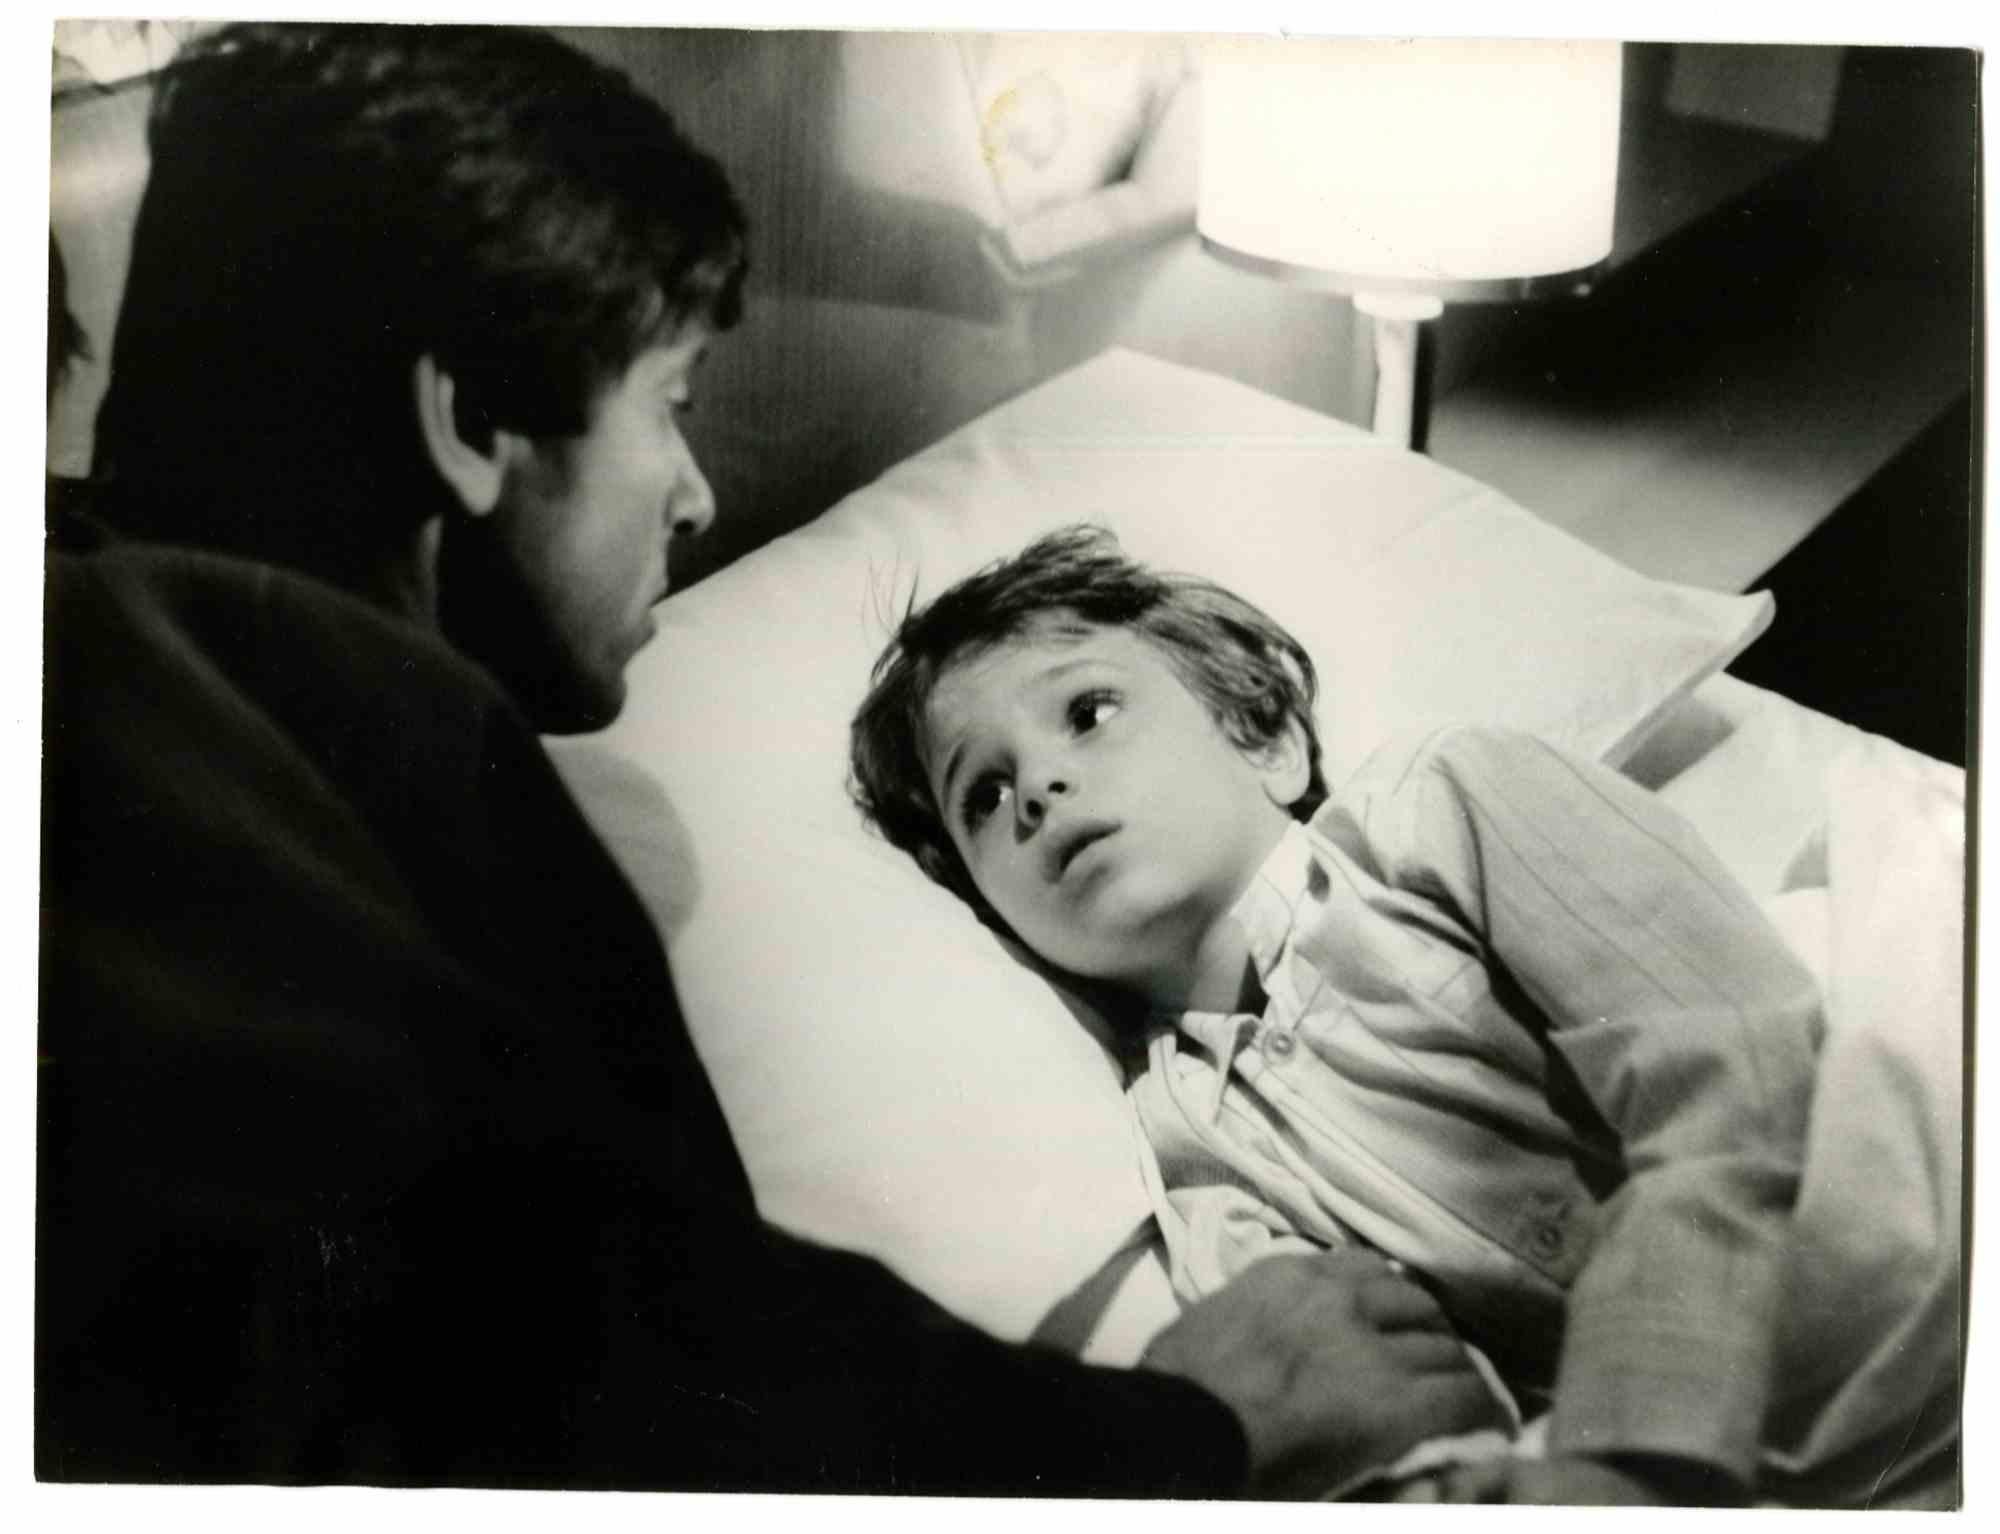 Unknown Portrait Photograph - Gianni Morandi and Marco Vivio- Photo - 1980s